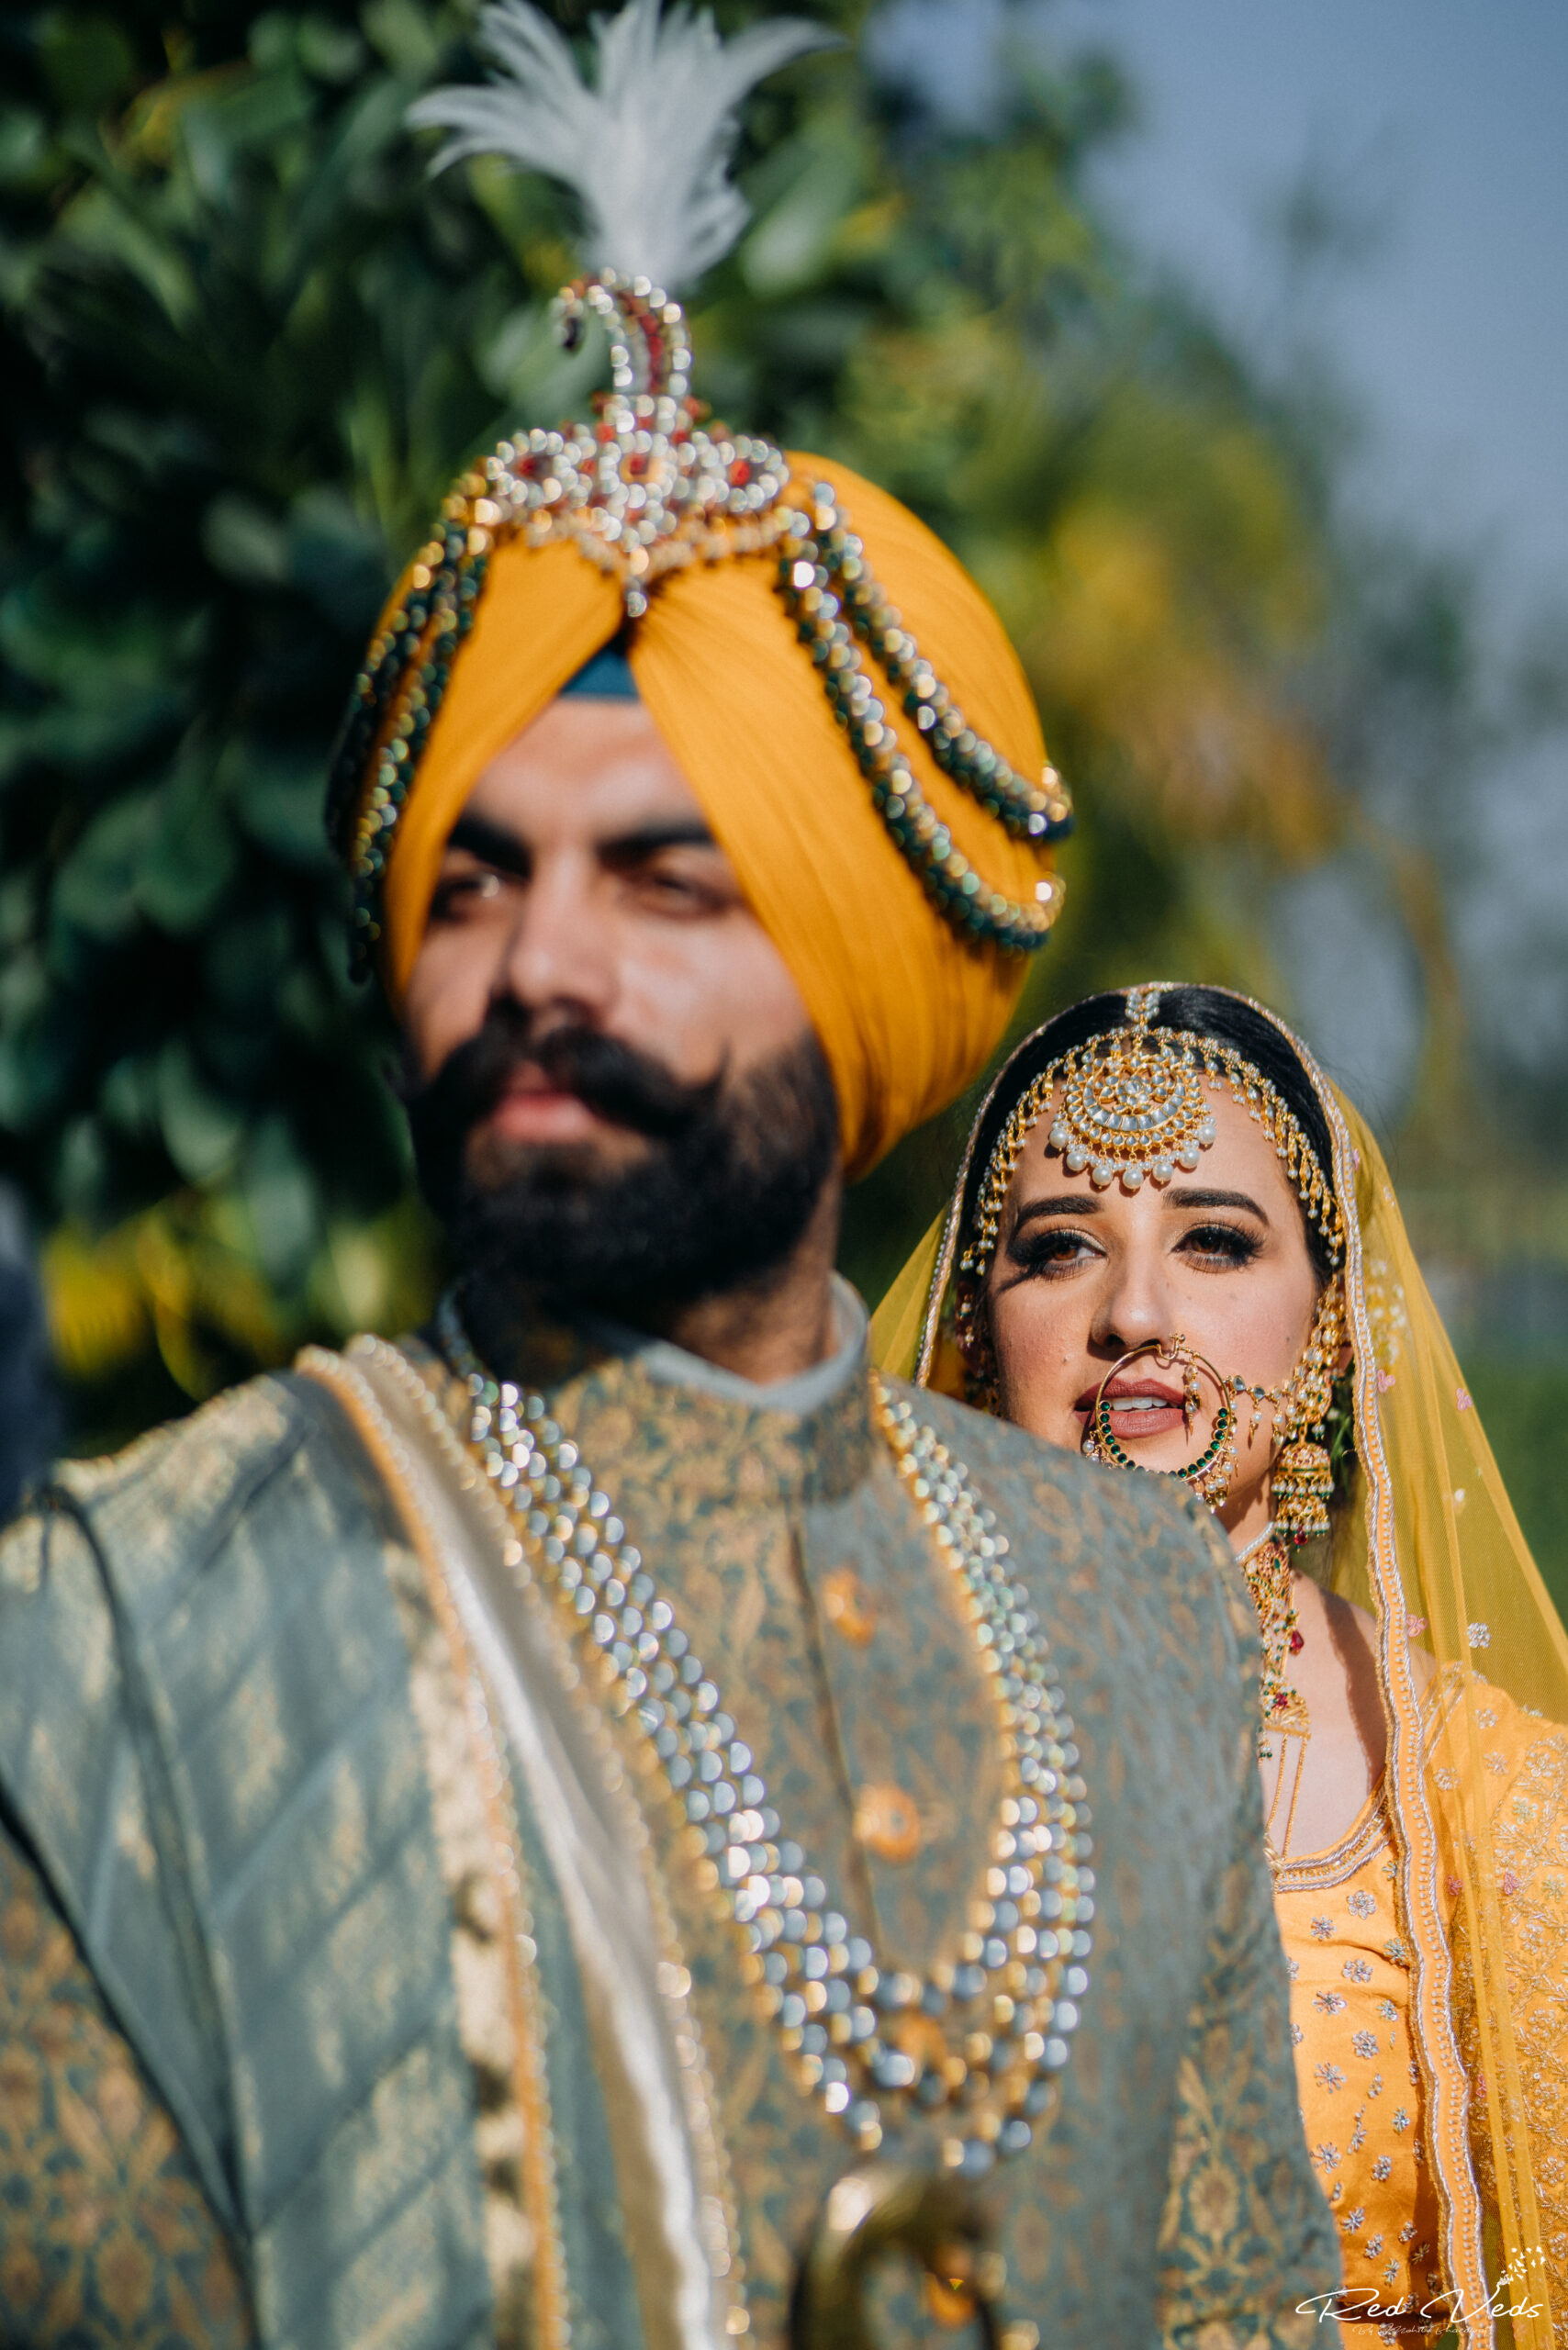 Punjabi royal wedding | Bridal photography poses, Wedding photoshoot poses, Sikh  bride